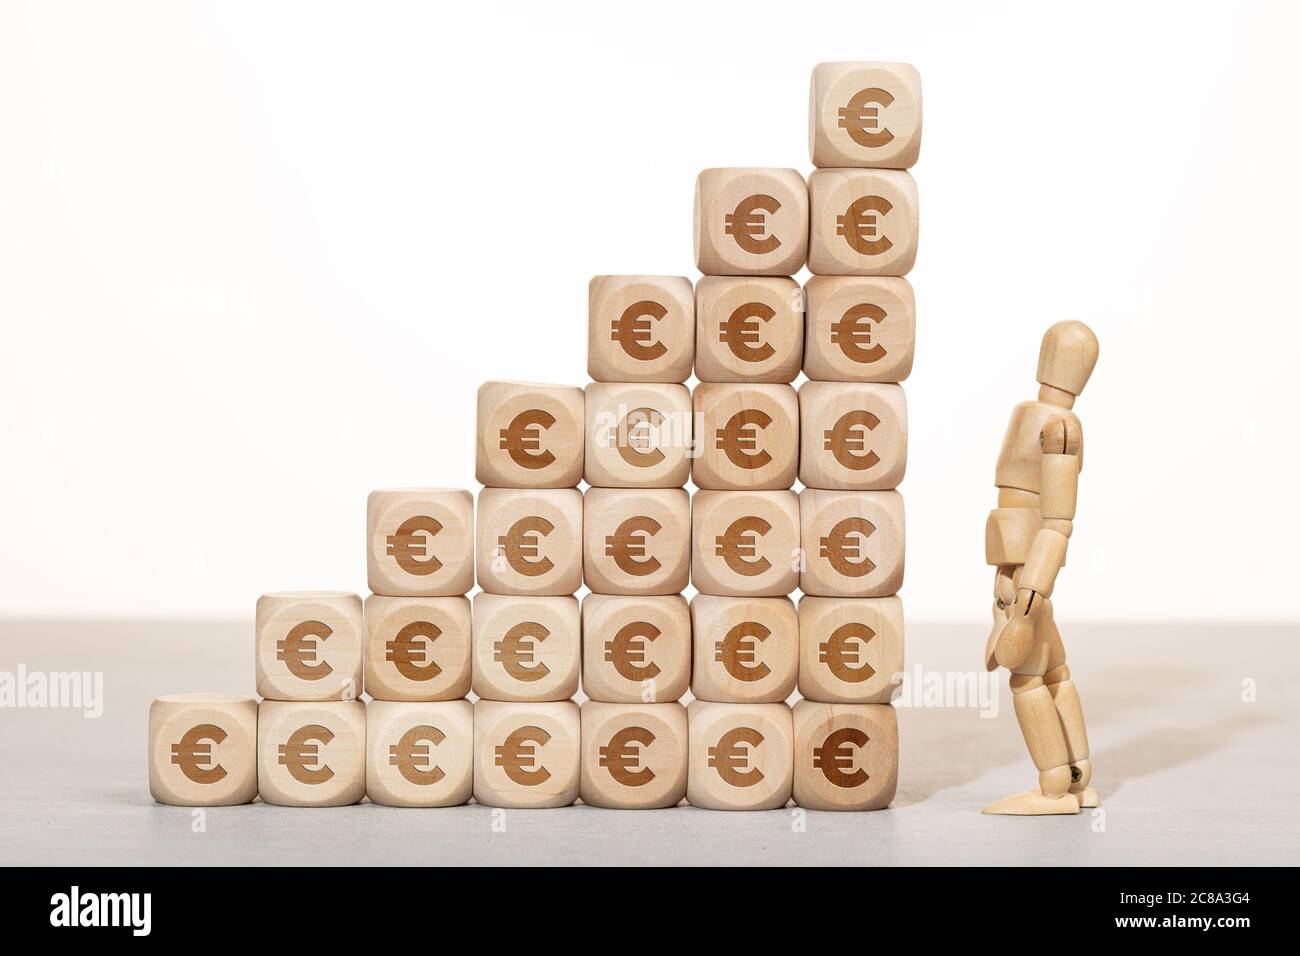 Concept de croissance, de richesse ou de richesse. mannequin en bois regardant un groupe de blocs de bois empilés avec le symbole de l'euro Banque D'Images